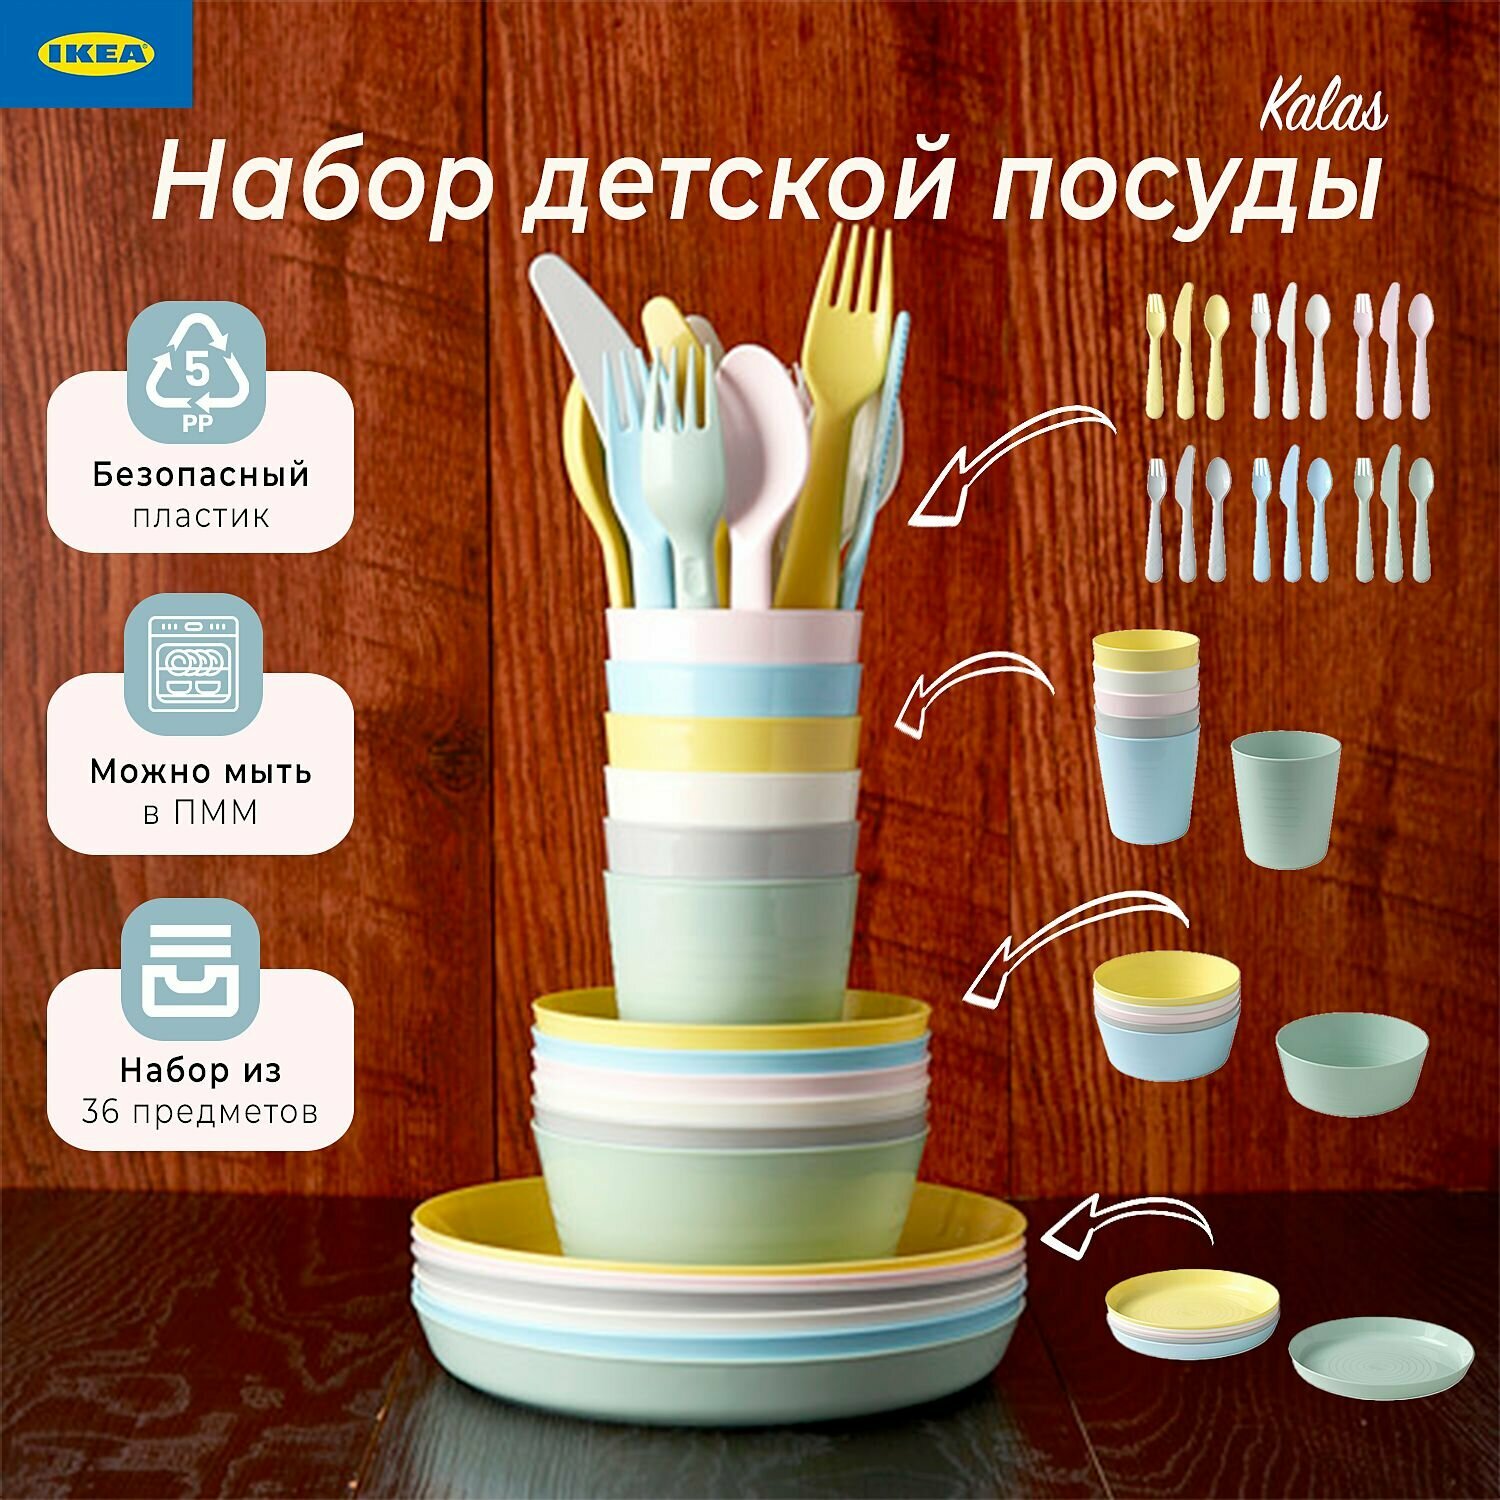 Набор детской посуды Икеа Калас, детская посуда Ikea Kalas, 36 предметов